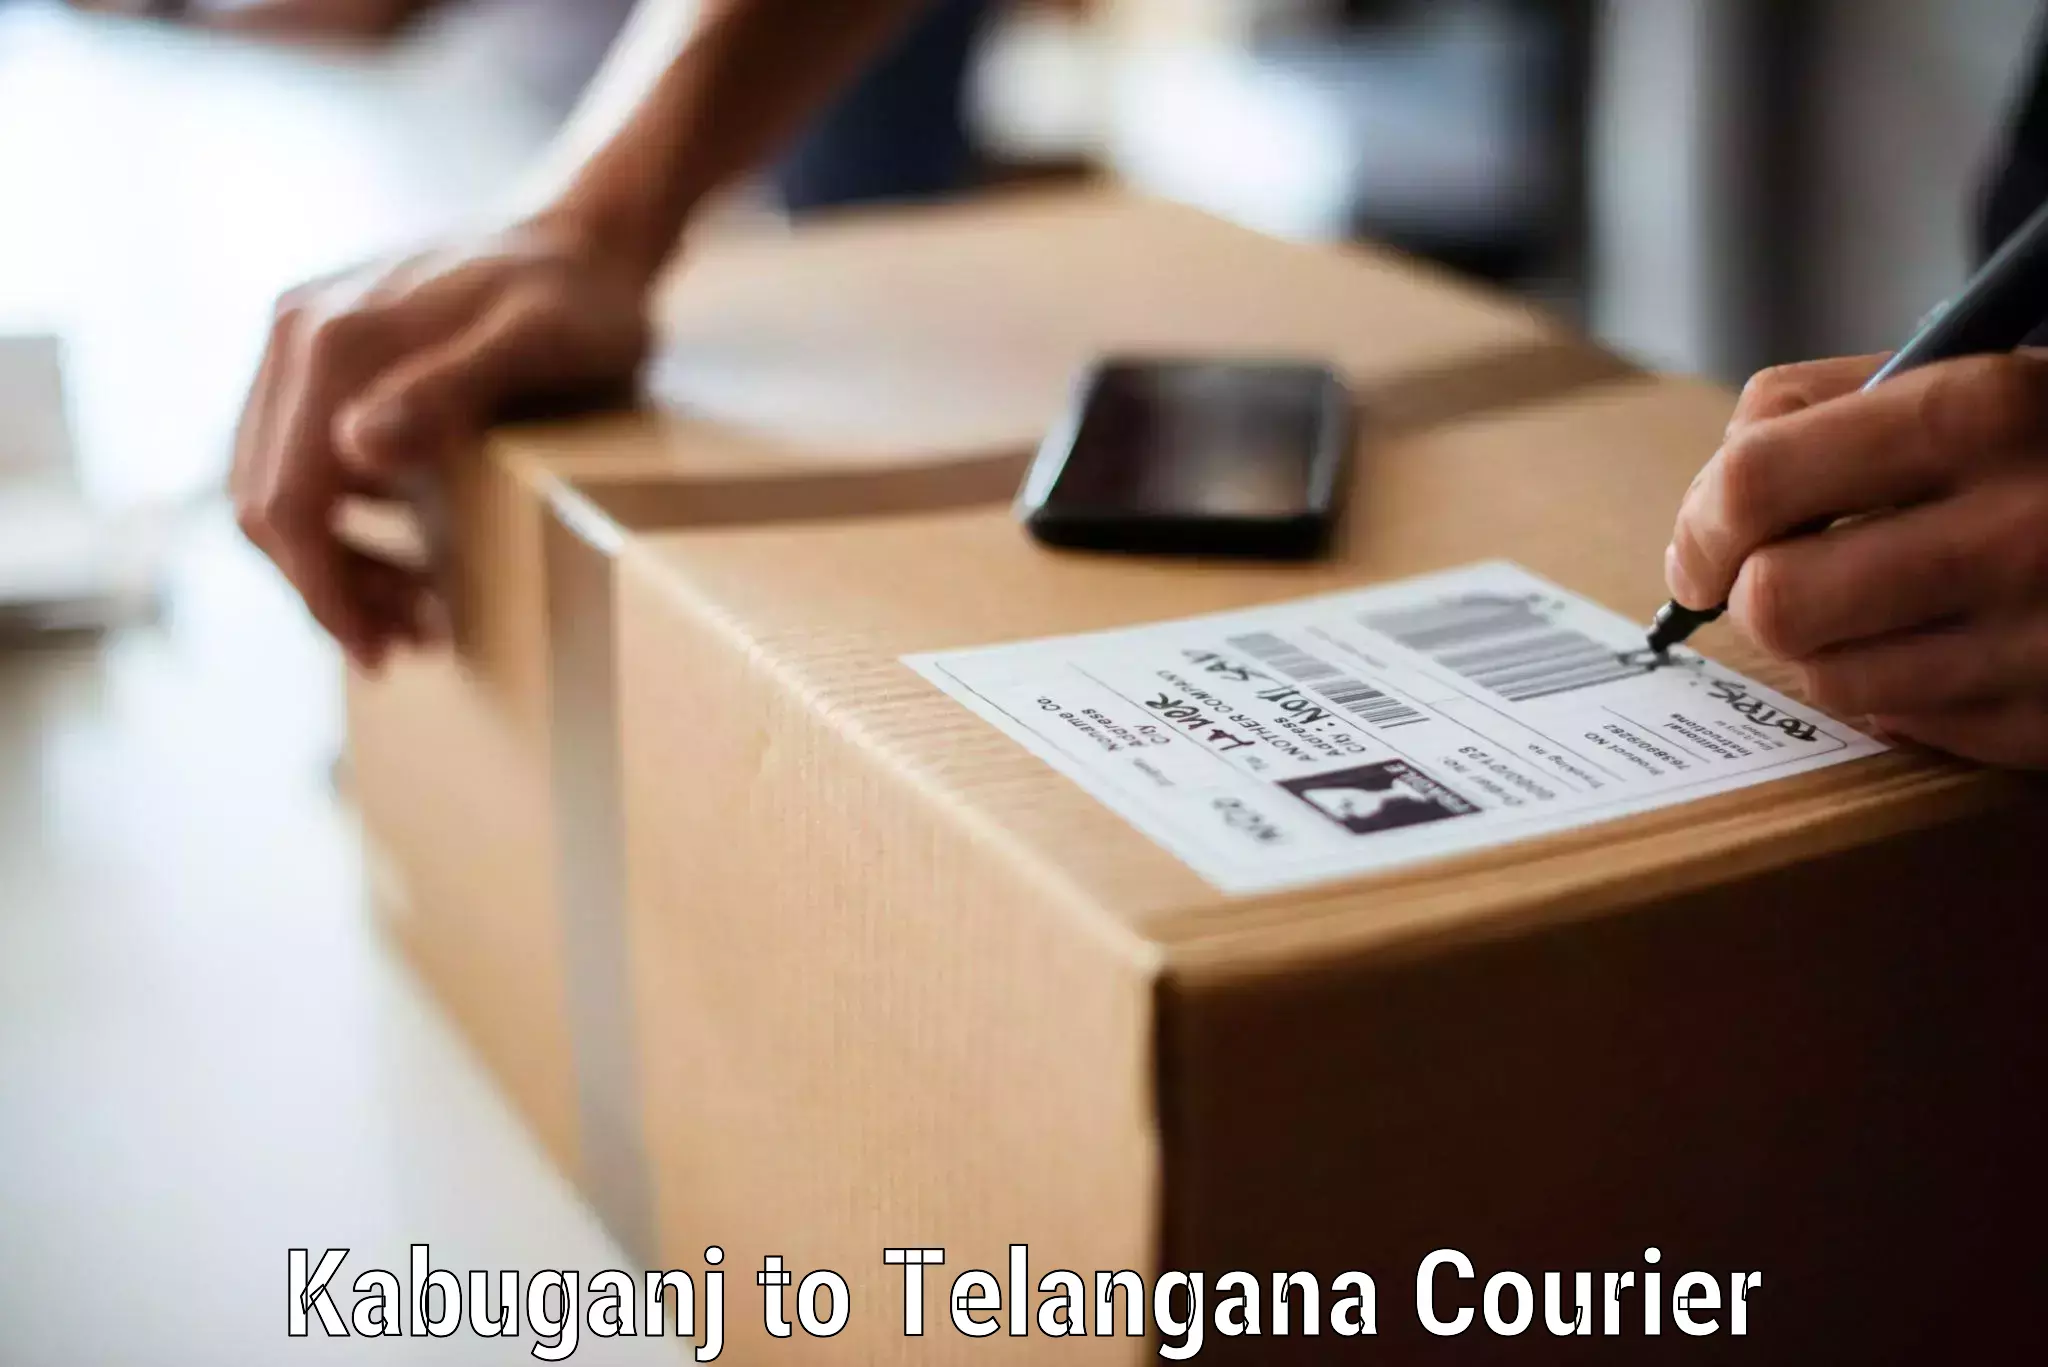 Reliable moving assistance Kabuganj to Thungathurthi